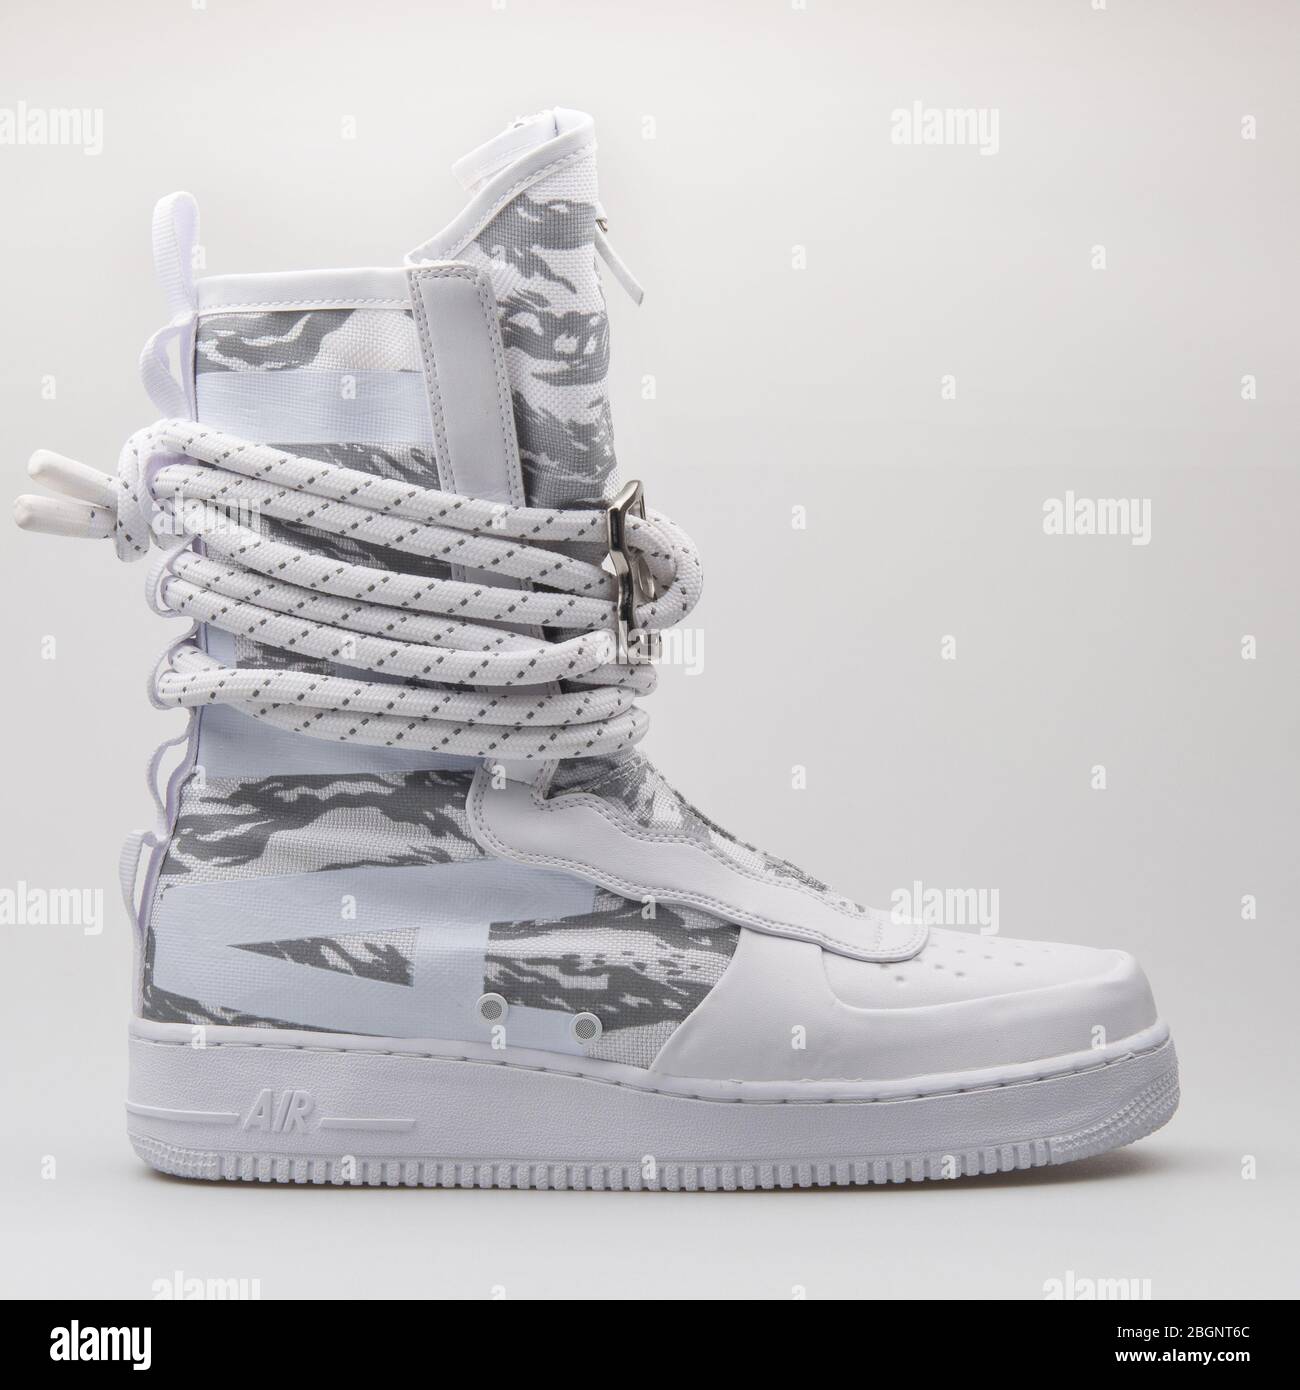 VIENNE, AUTRICHE - 24 AOÛT 2017 : sneaker Nike SF Air Force 1 High Premium  White sur fond blanc Photo Stock - Alamy